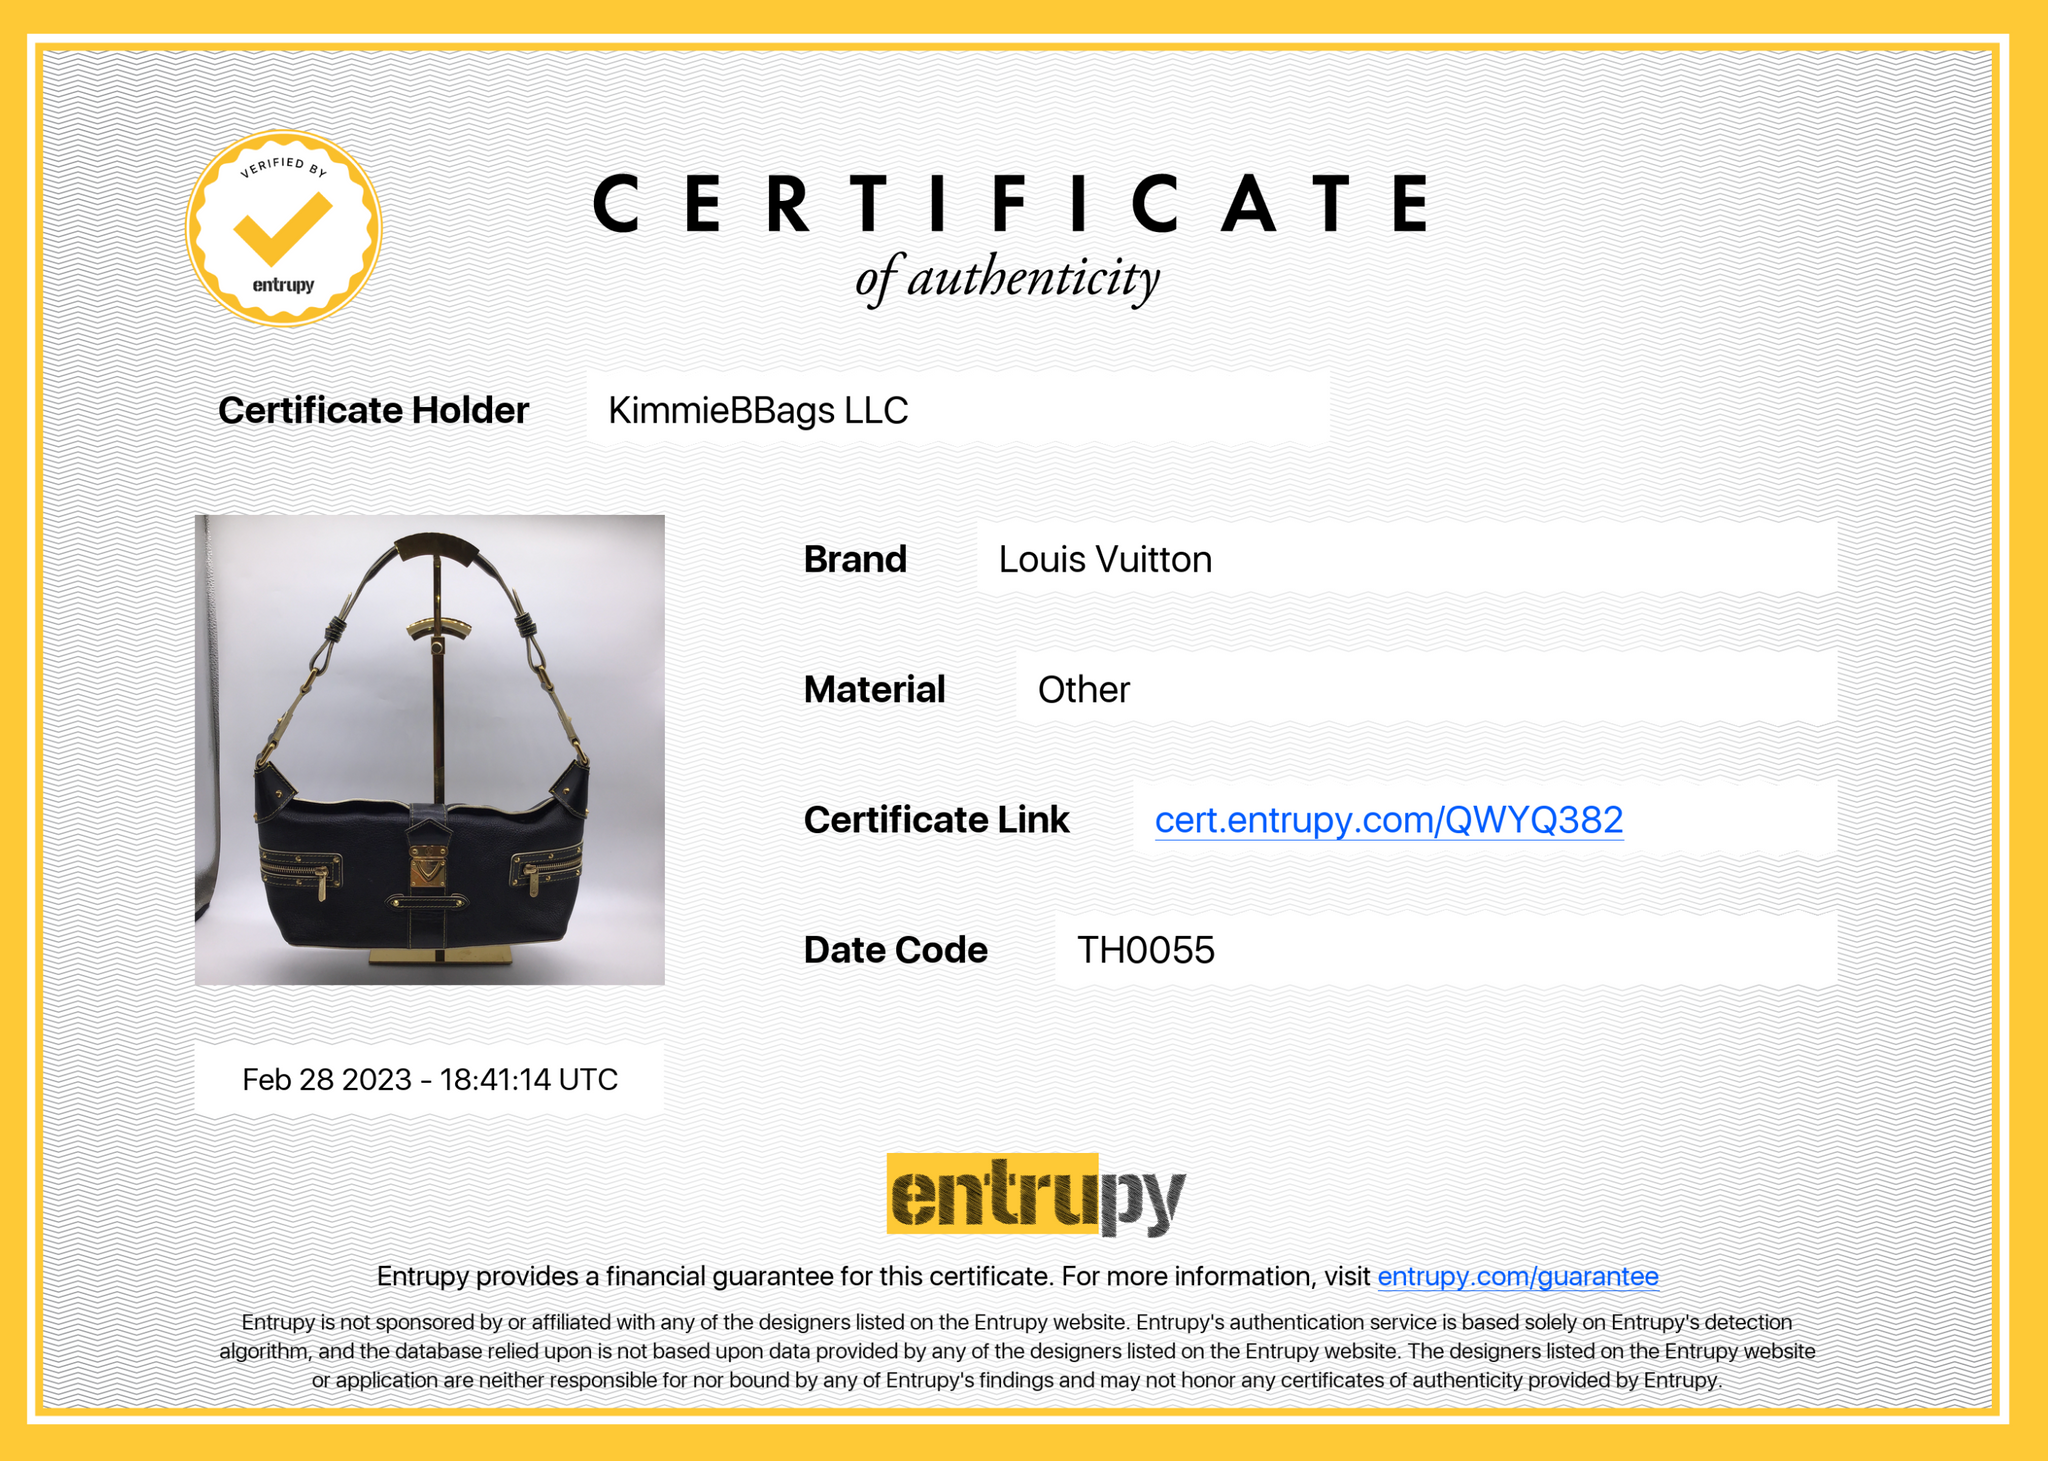 Auth Louis Vuitton Suhali Lockit GM M91863 Women's Handbag Noir